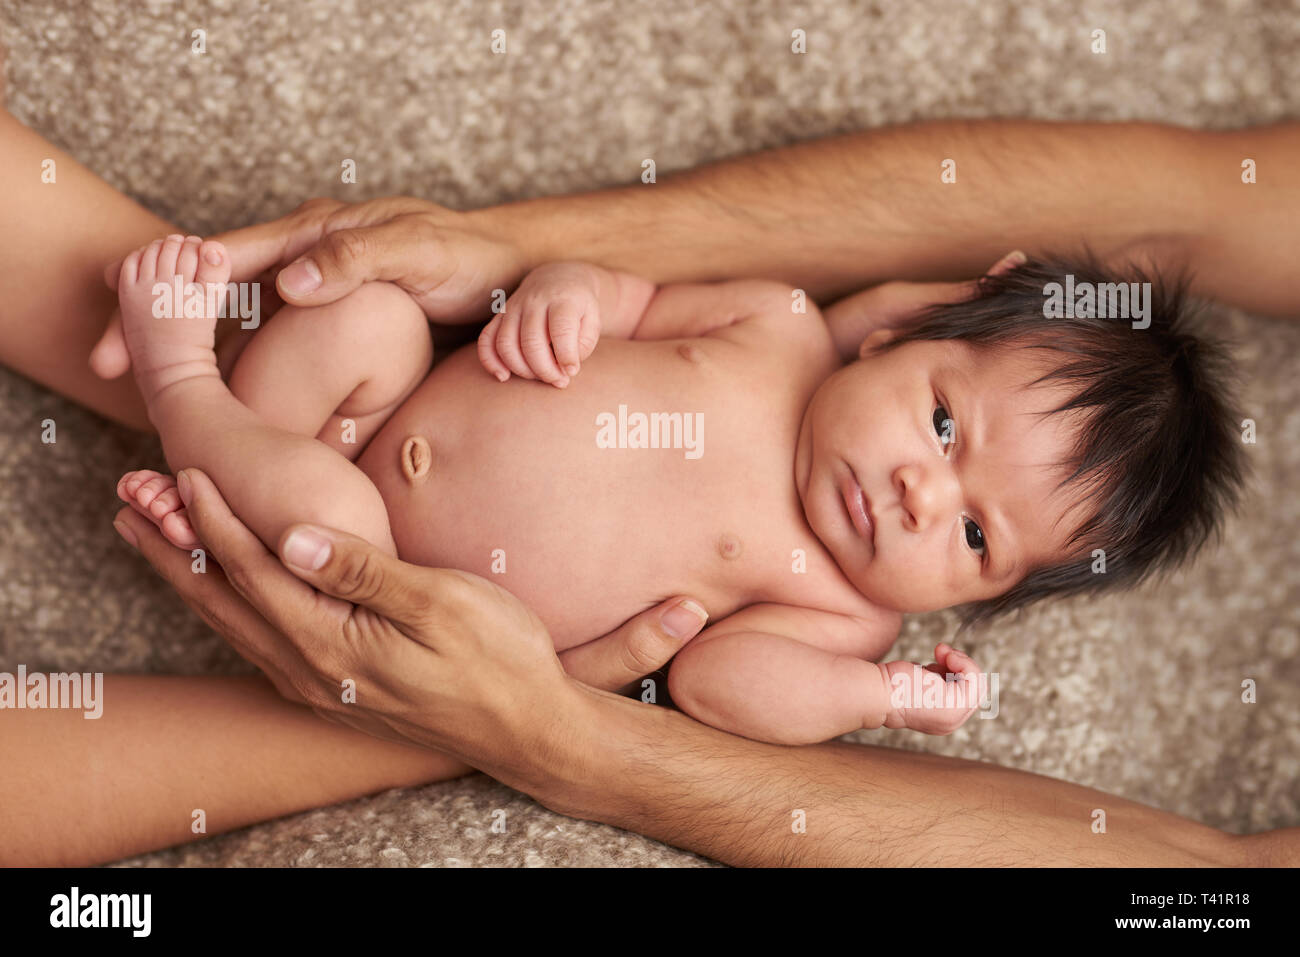 Cute Baby umarmte mit Eltern Hände über anzeigen Stockfoto